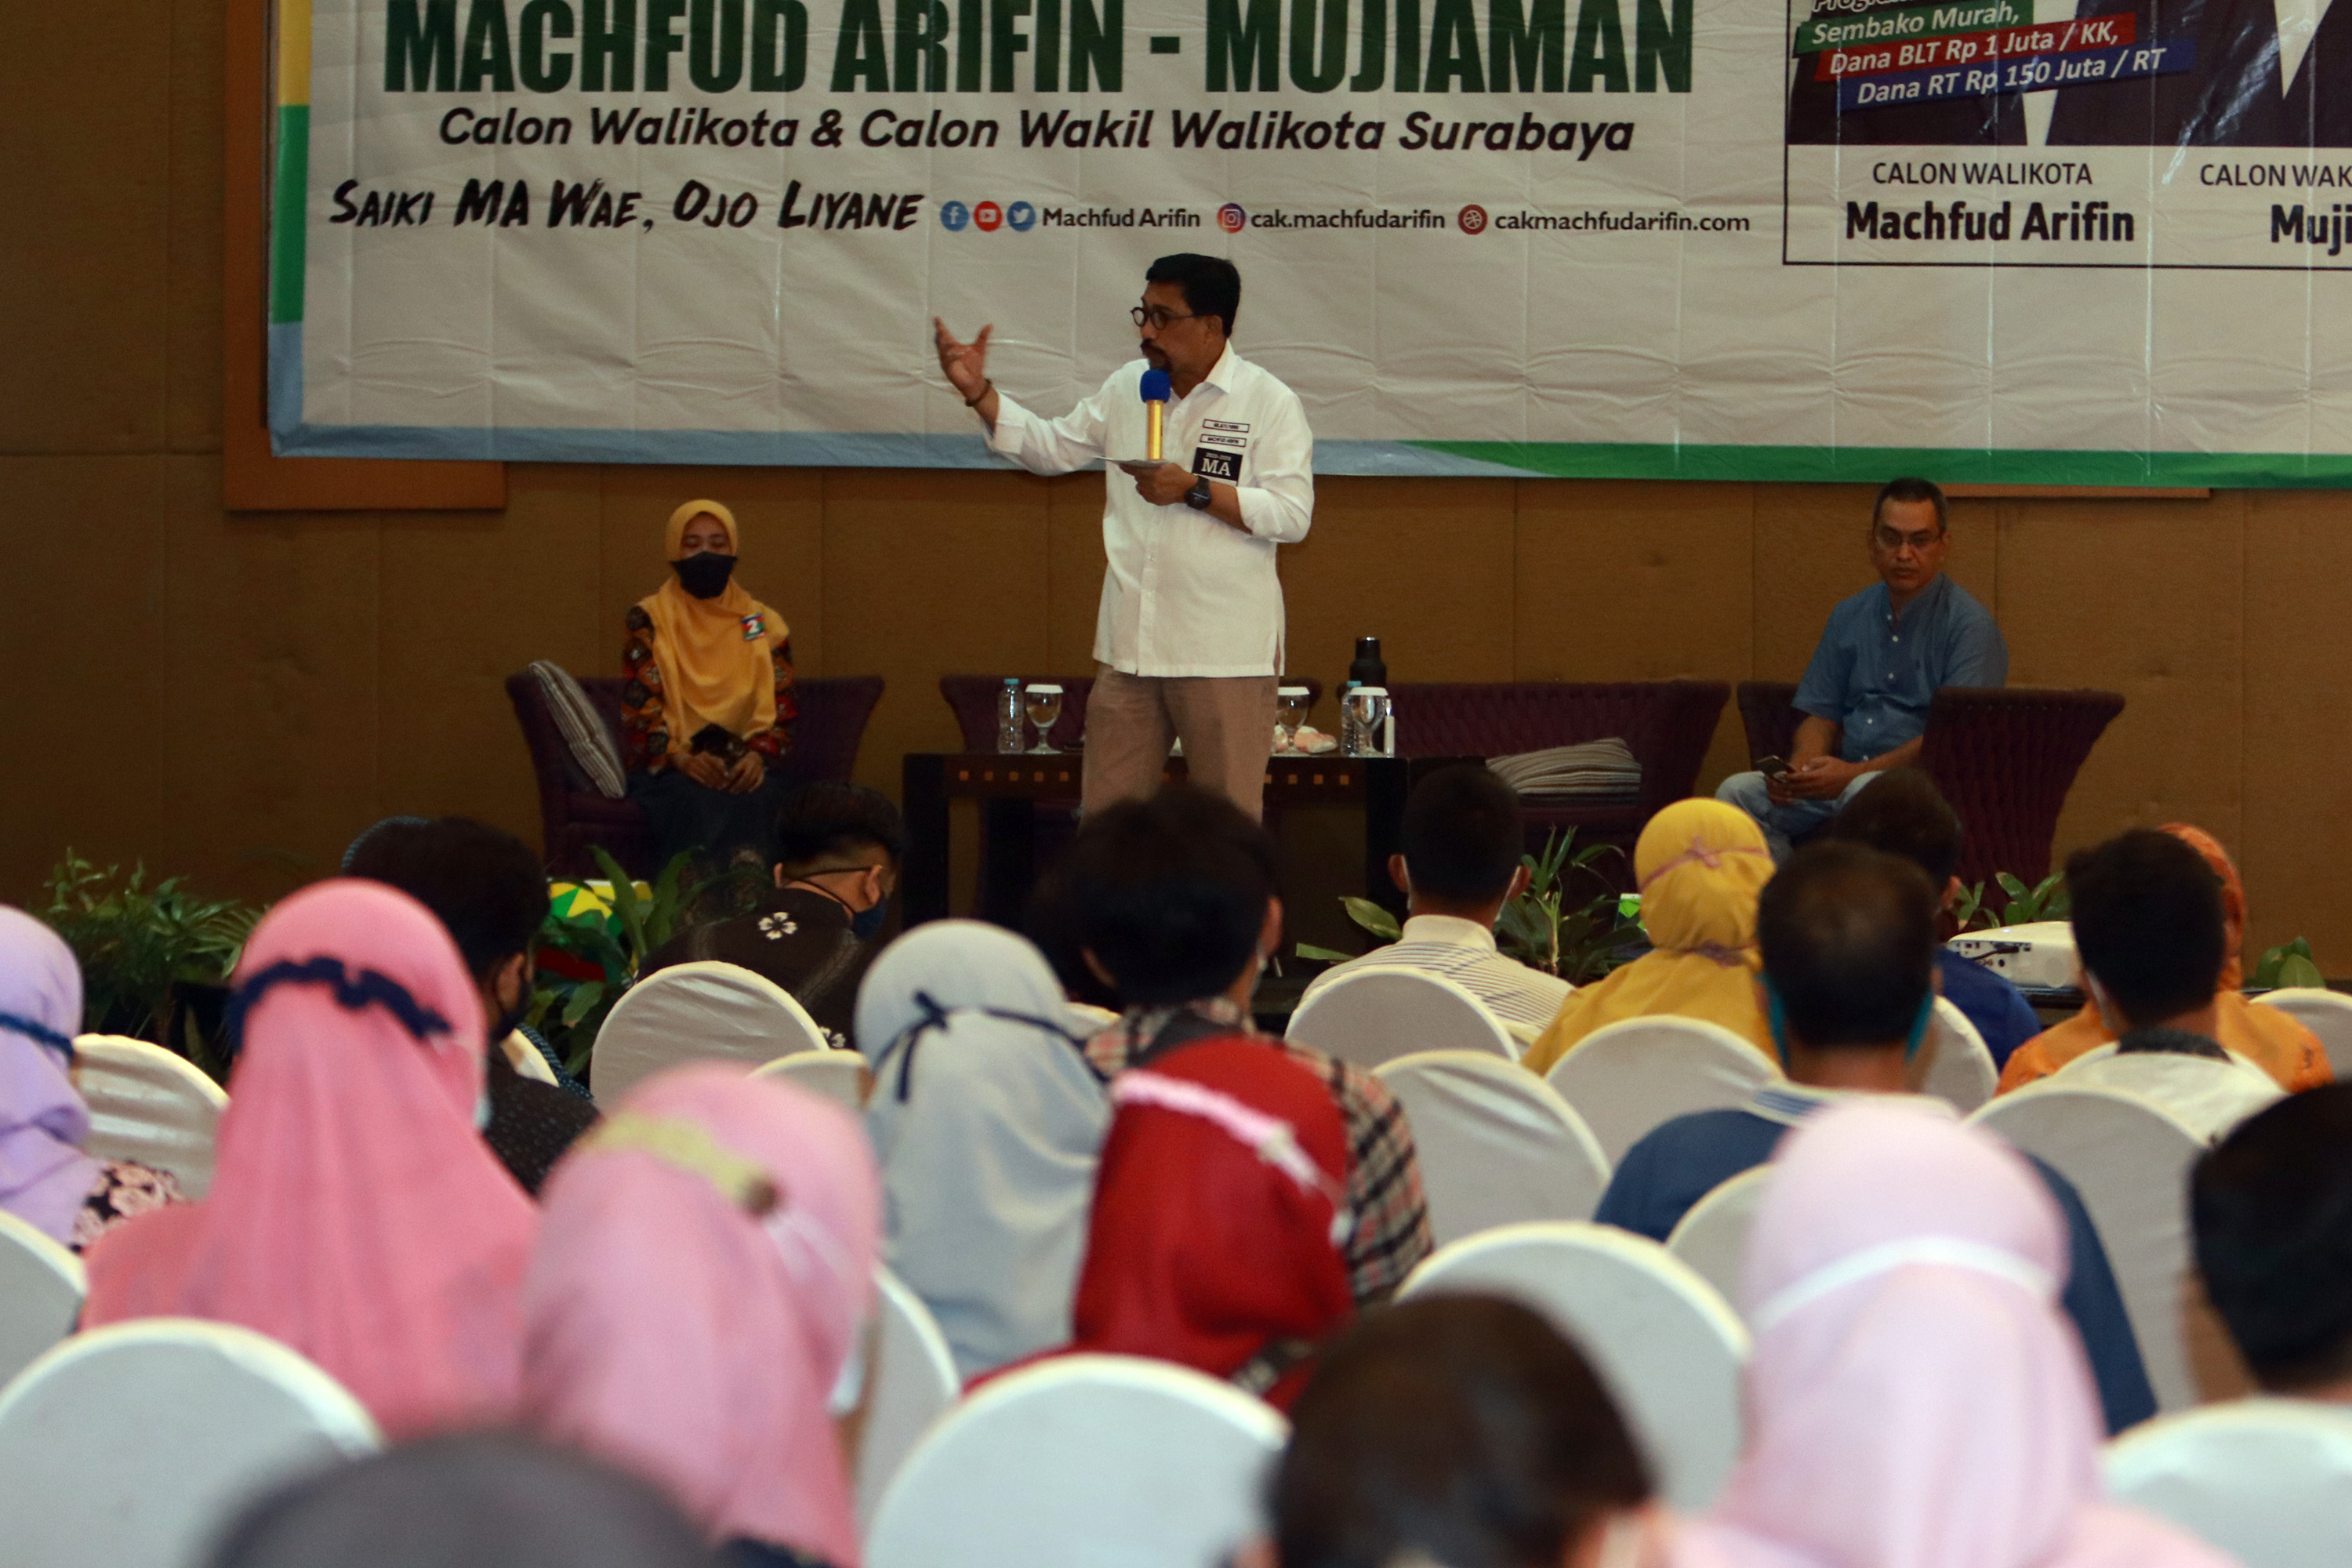 Cawali Surabaya, Machfud Arifin, ketika menyampaikan gagasannya dihadapan Kaum Moeda Surabaya di Hotel Mercure, Surabaya, Jumat 30 Oktober 2020. (Foto: Fariz Yarbo/Ngopibareng.id)